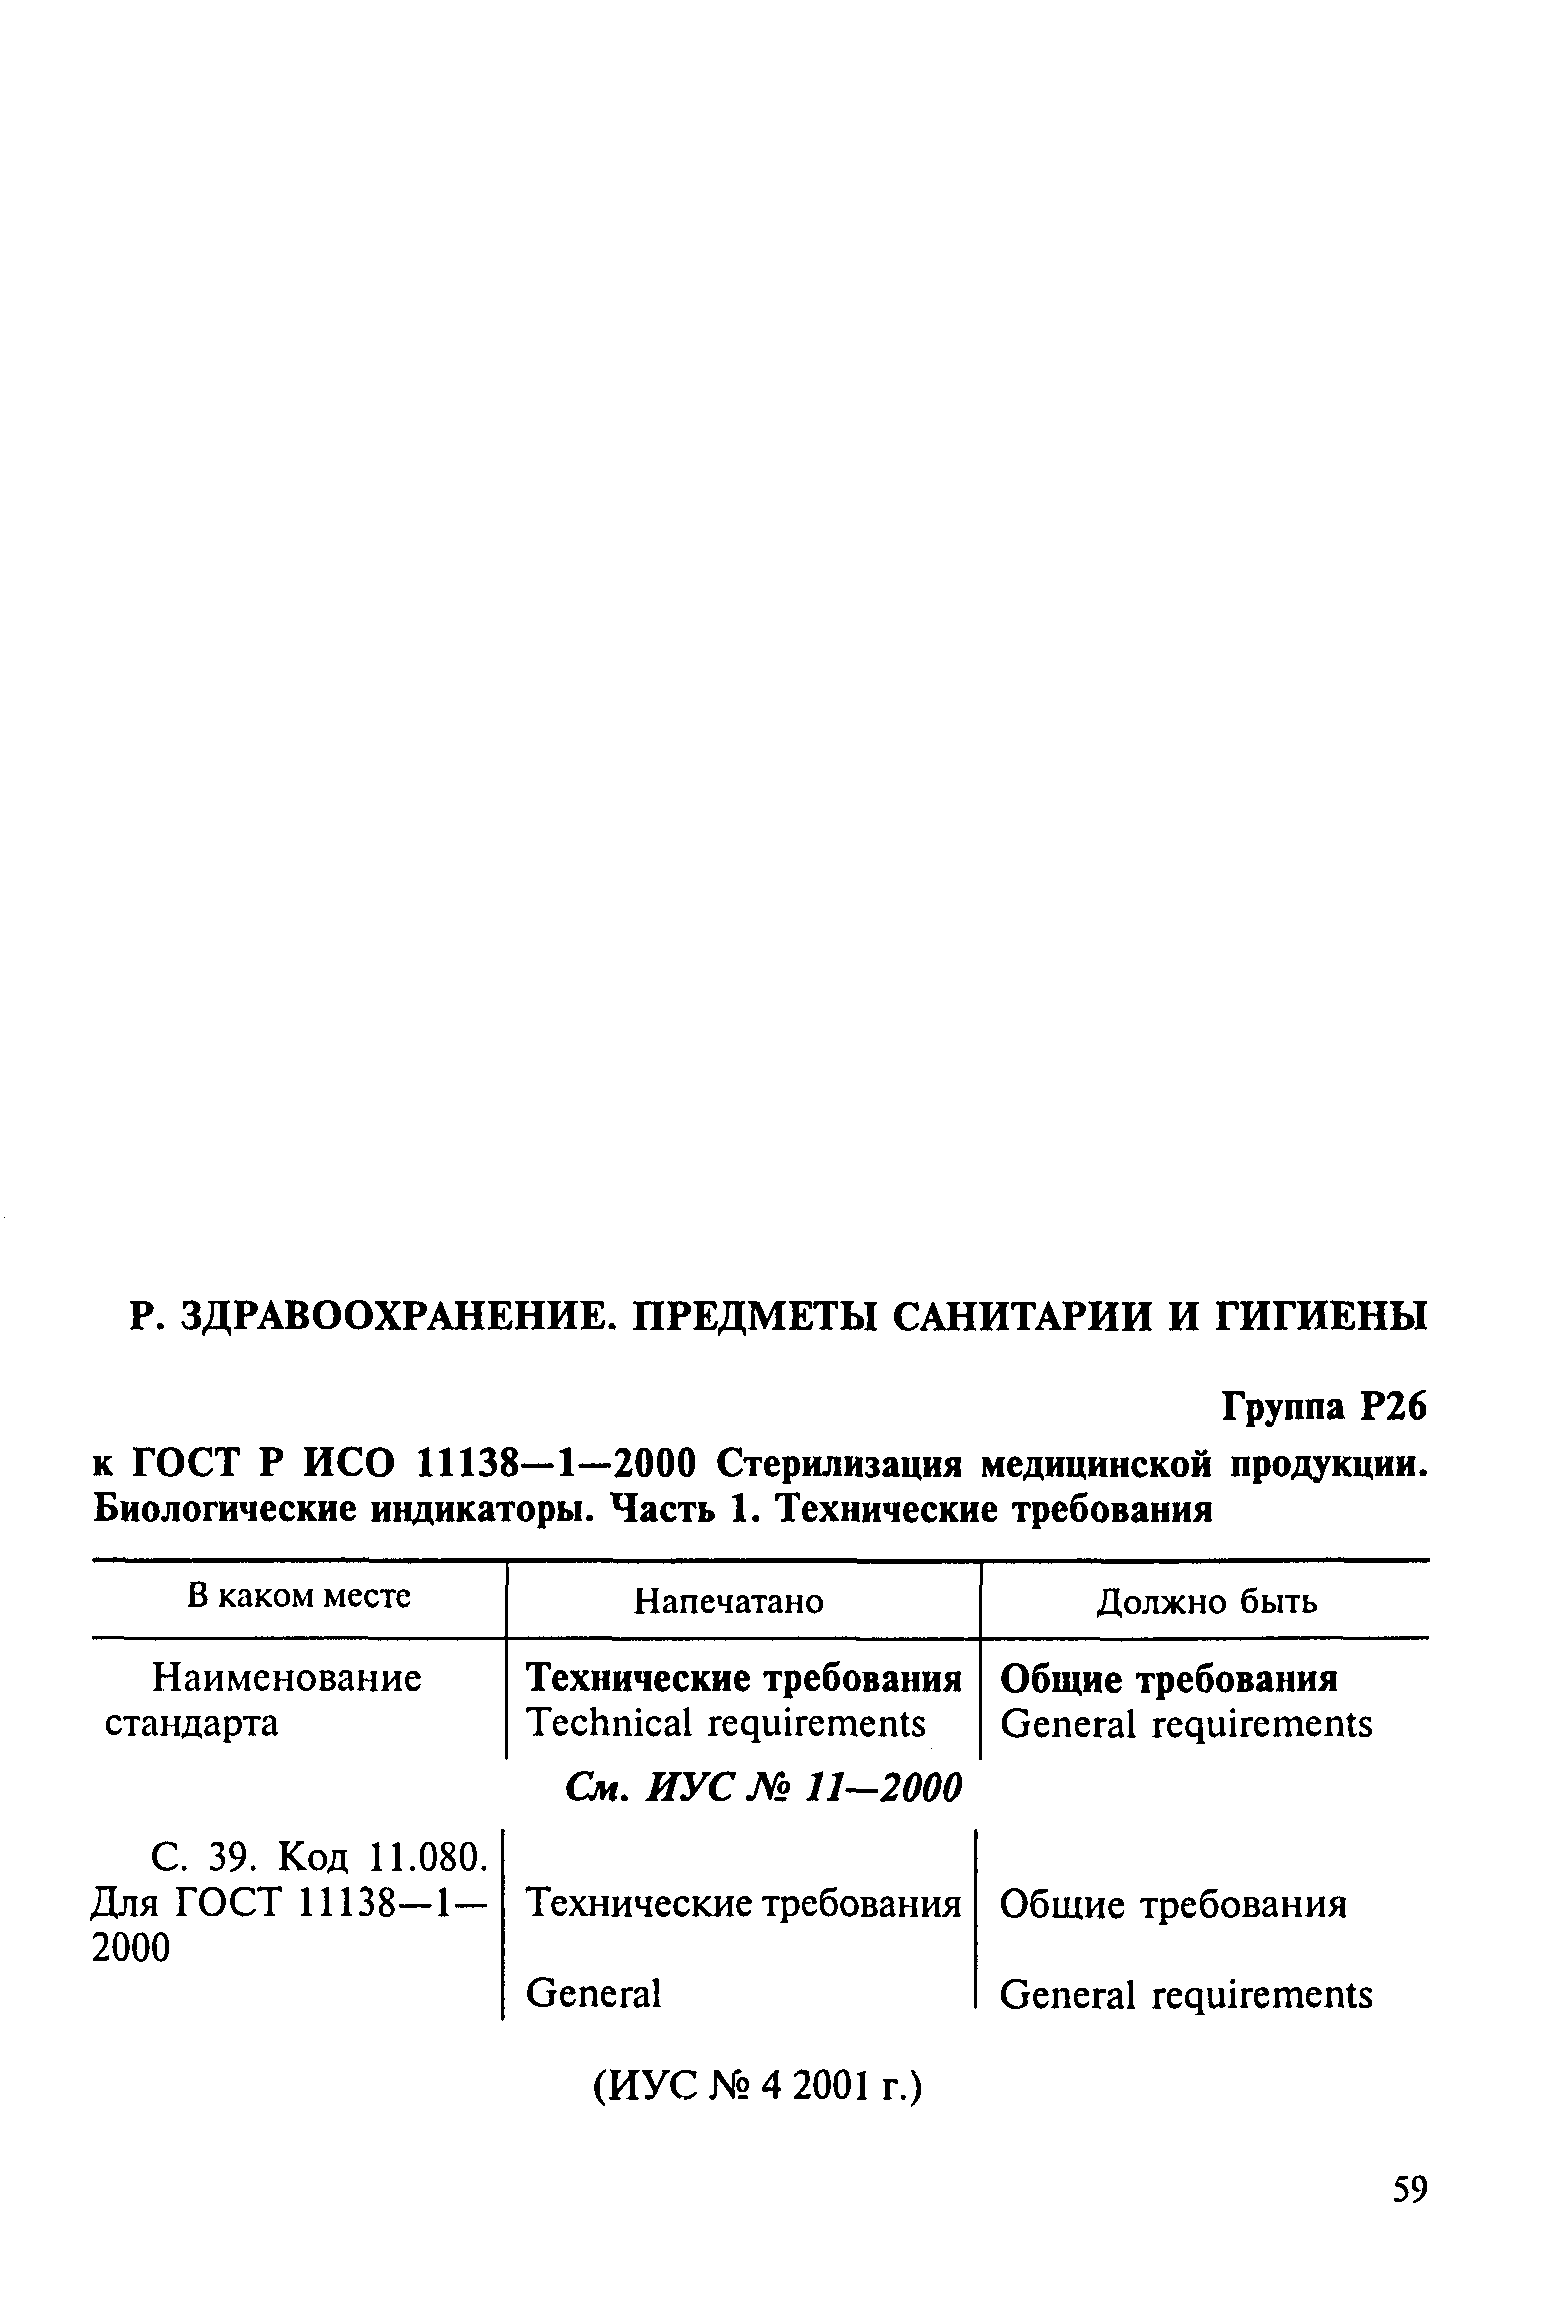 ГОСТ Р ИСО 11138-1-2000